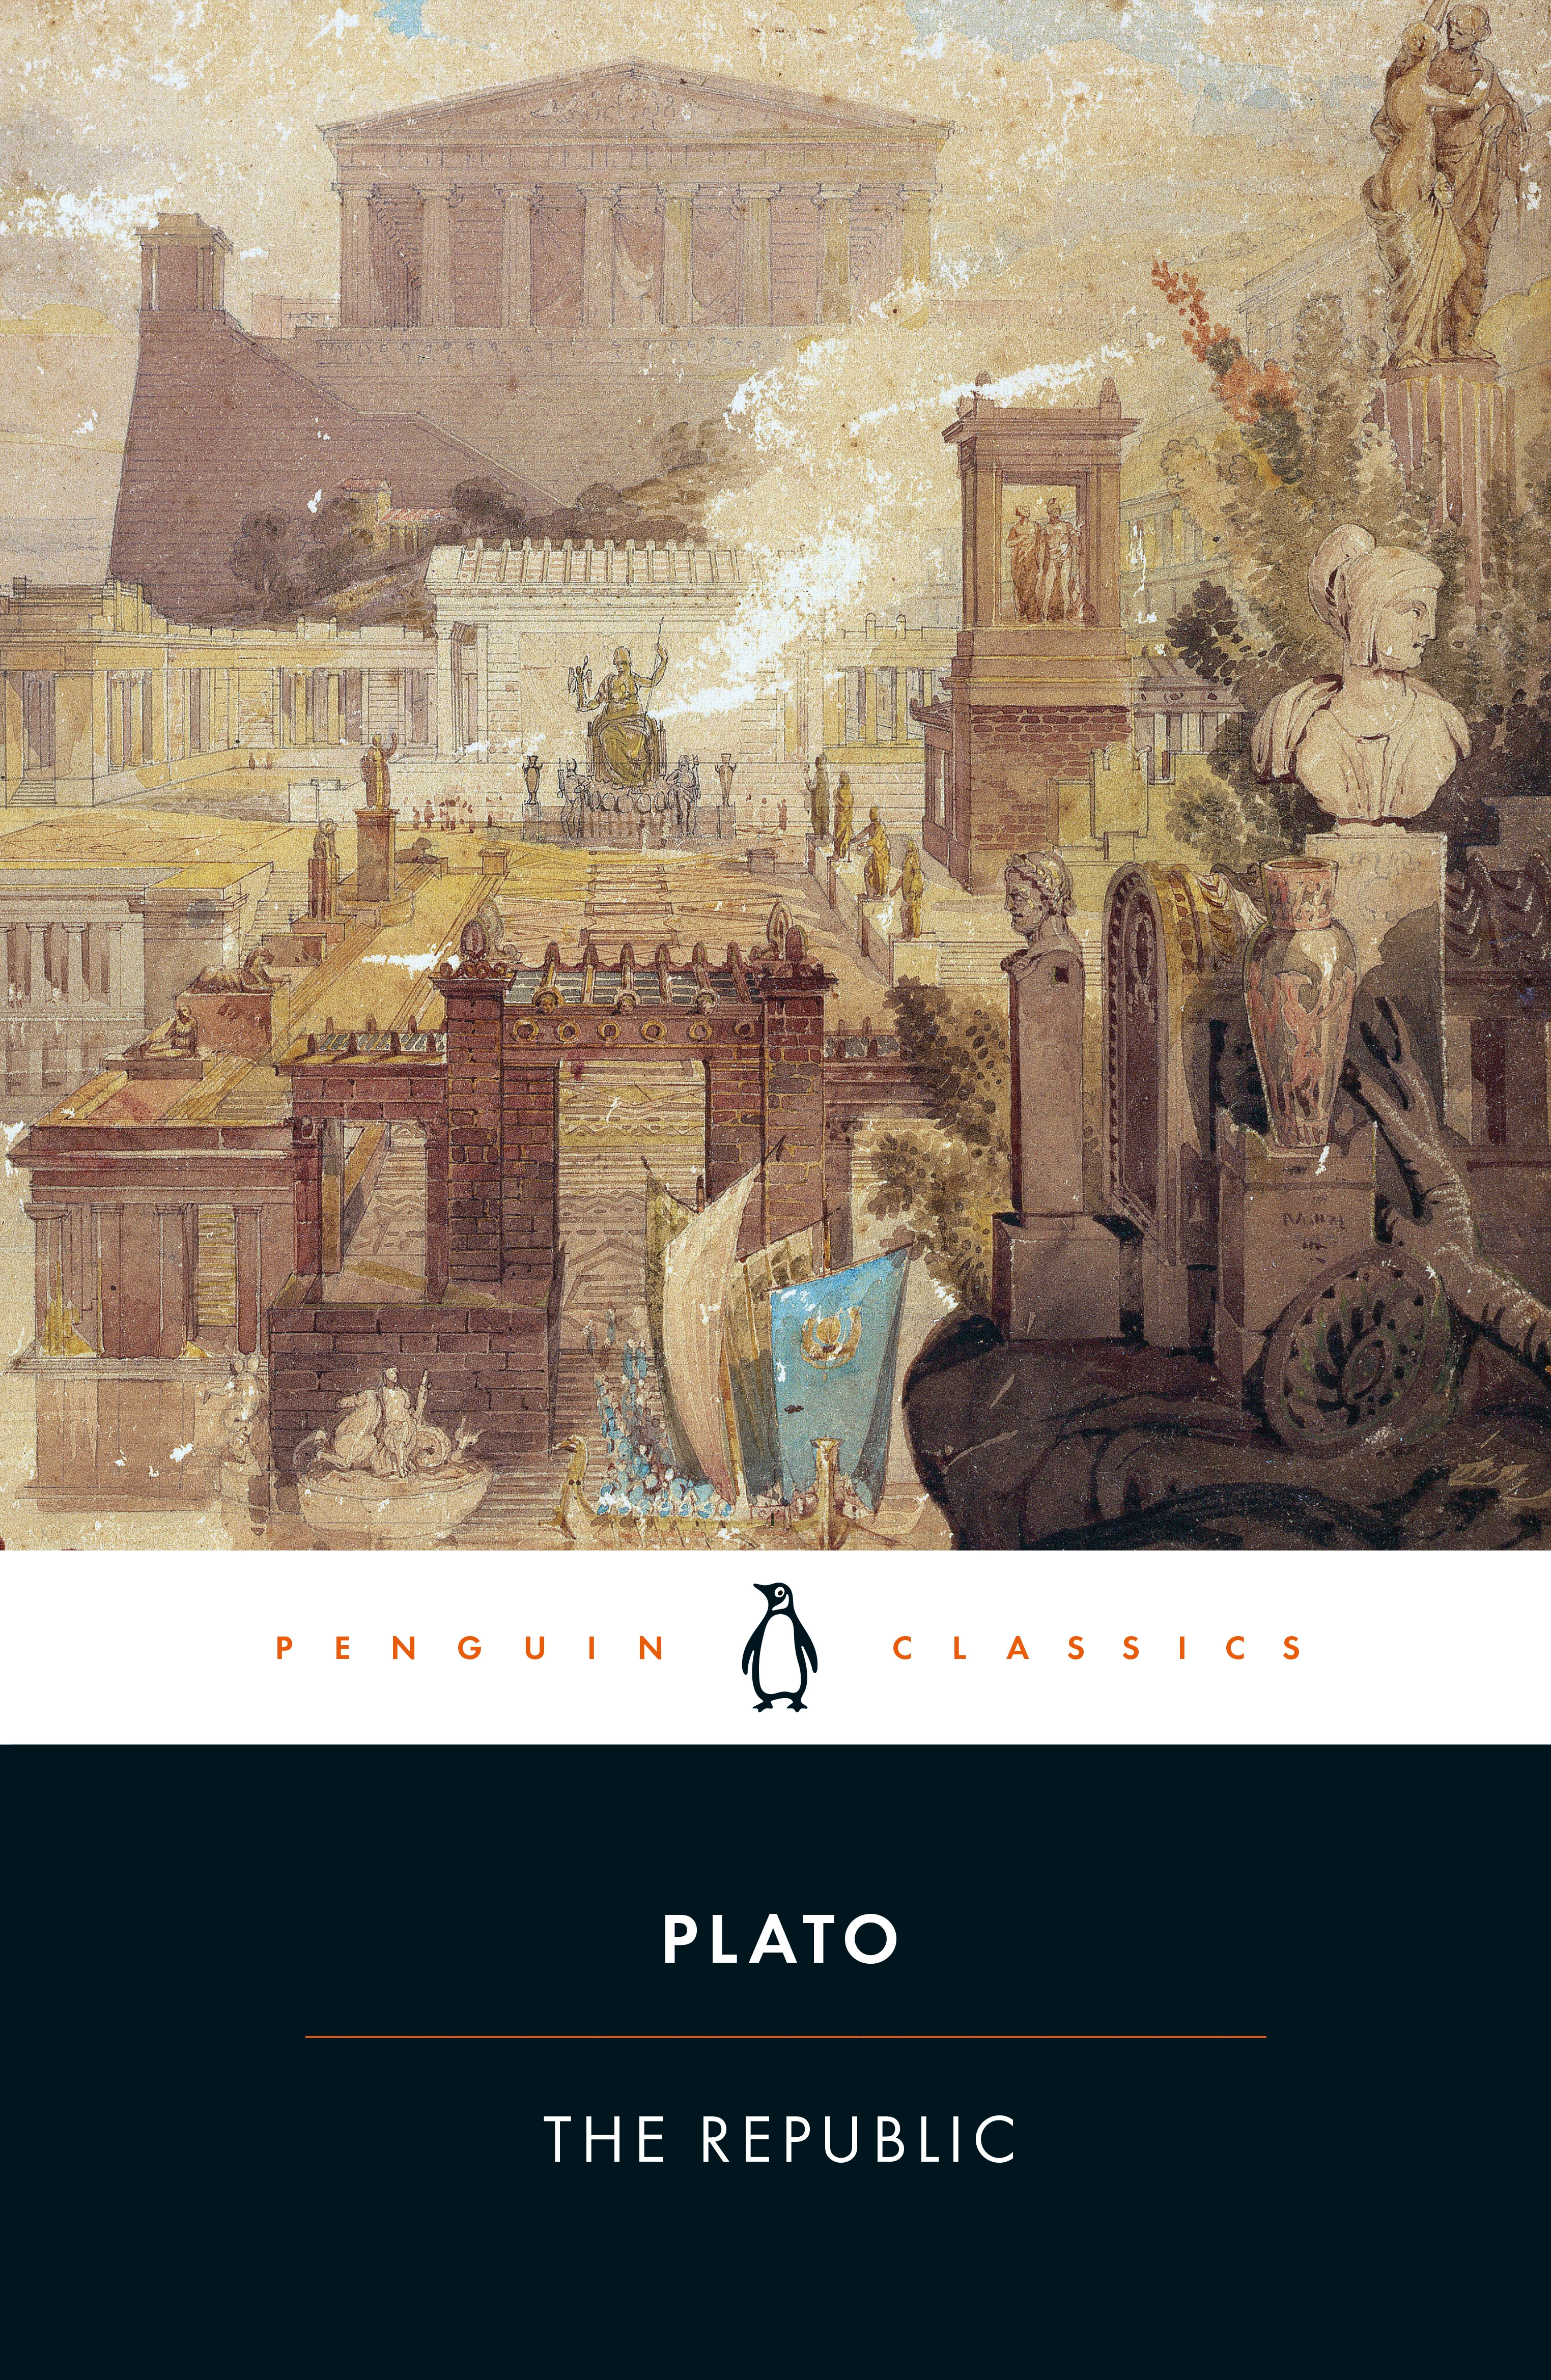 The Republic | Plato